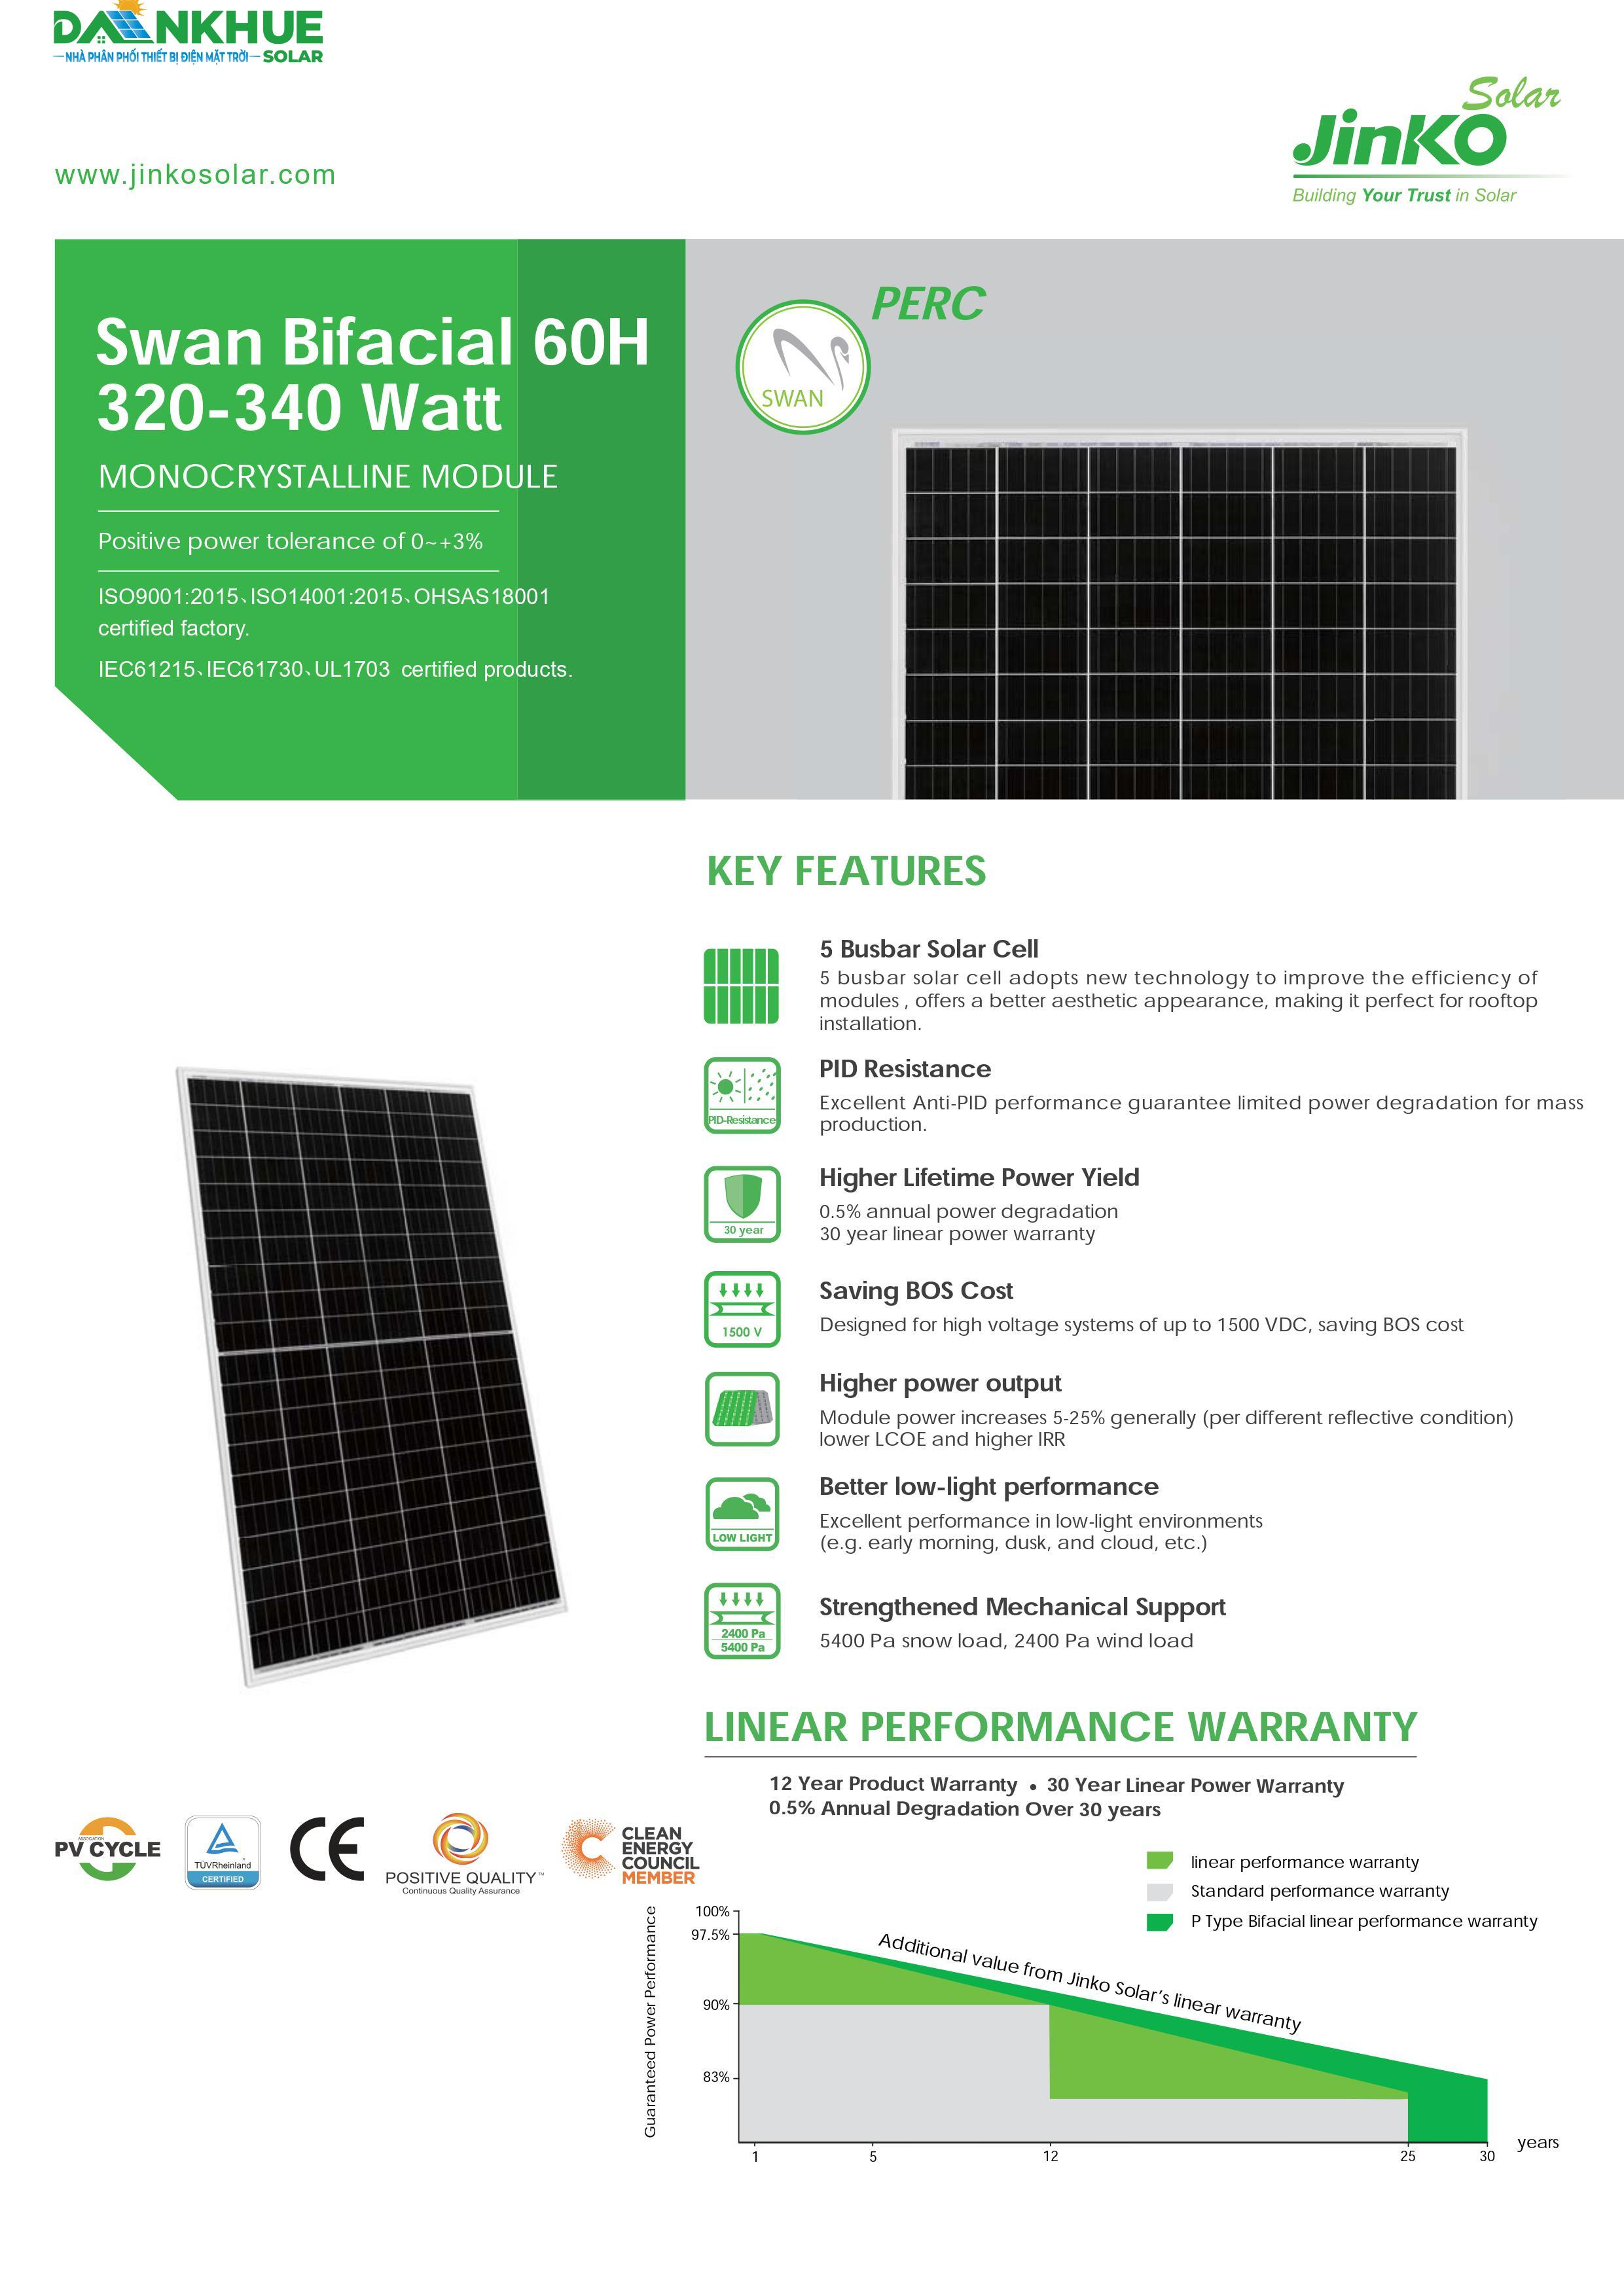 datasheet đặc điểm tấm pin năng lượng mặt trời Jinko Swan Bifacial 60H 320-340W